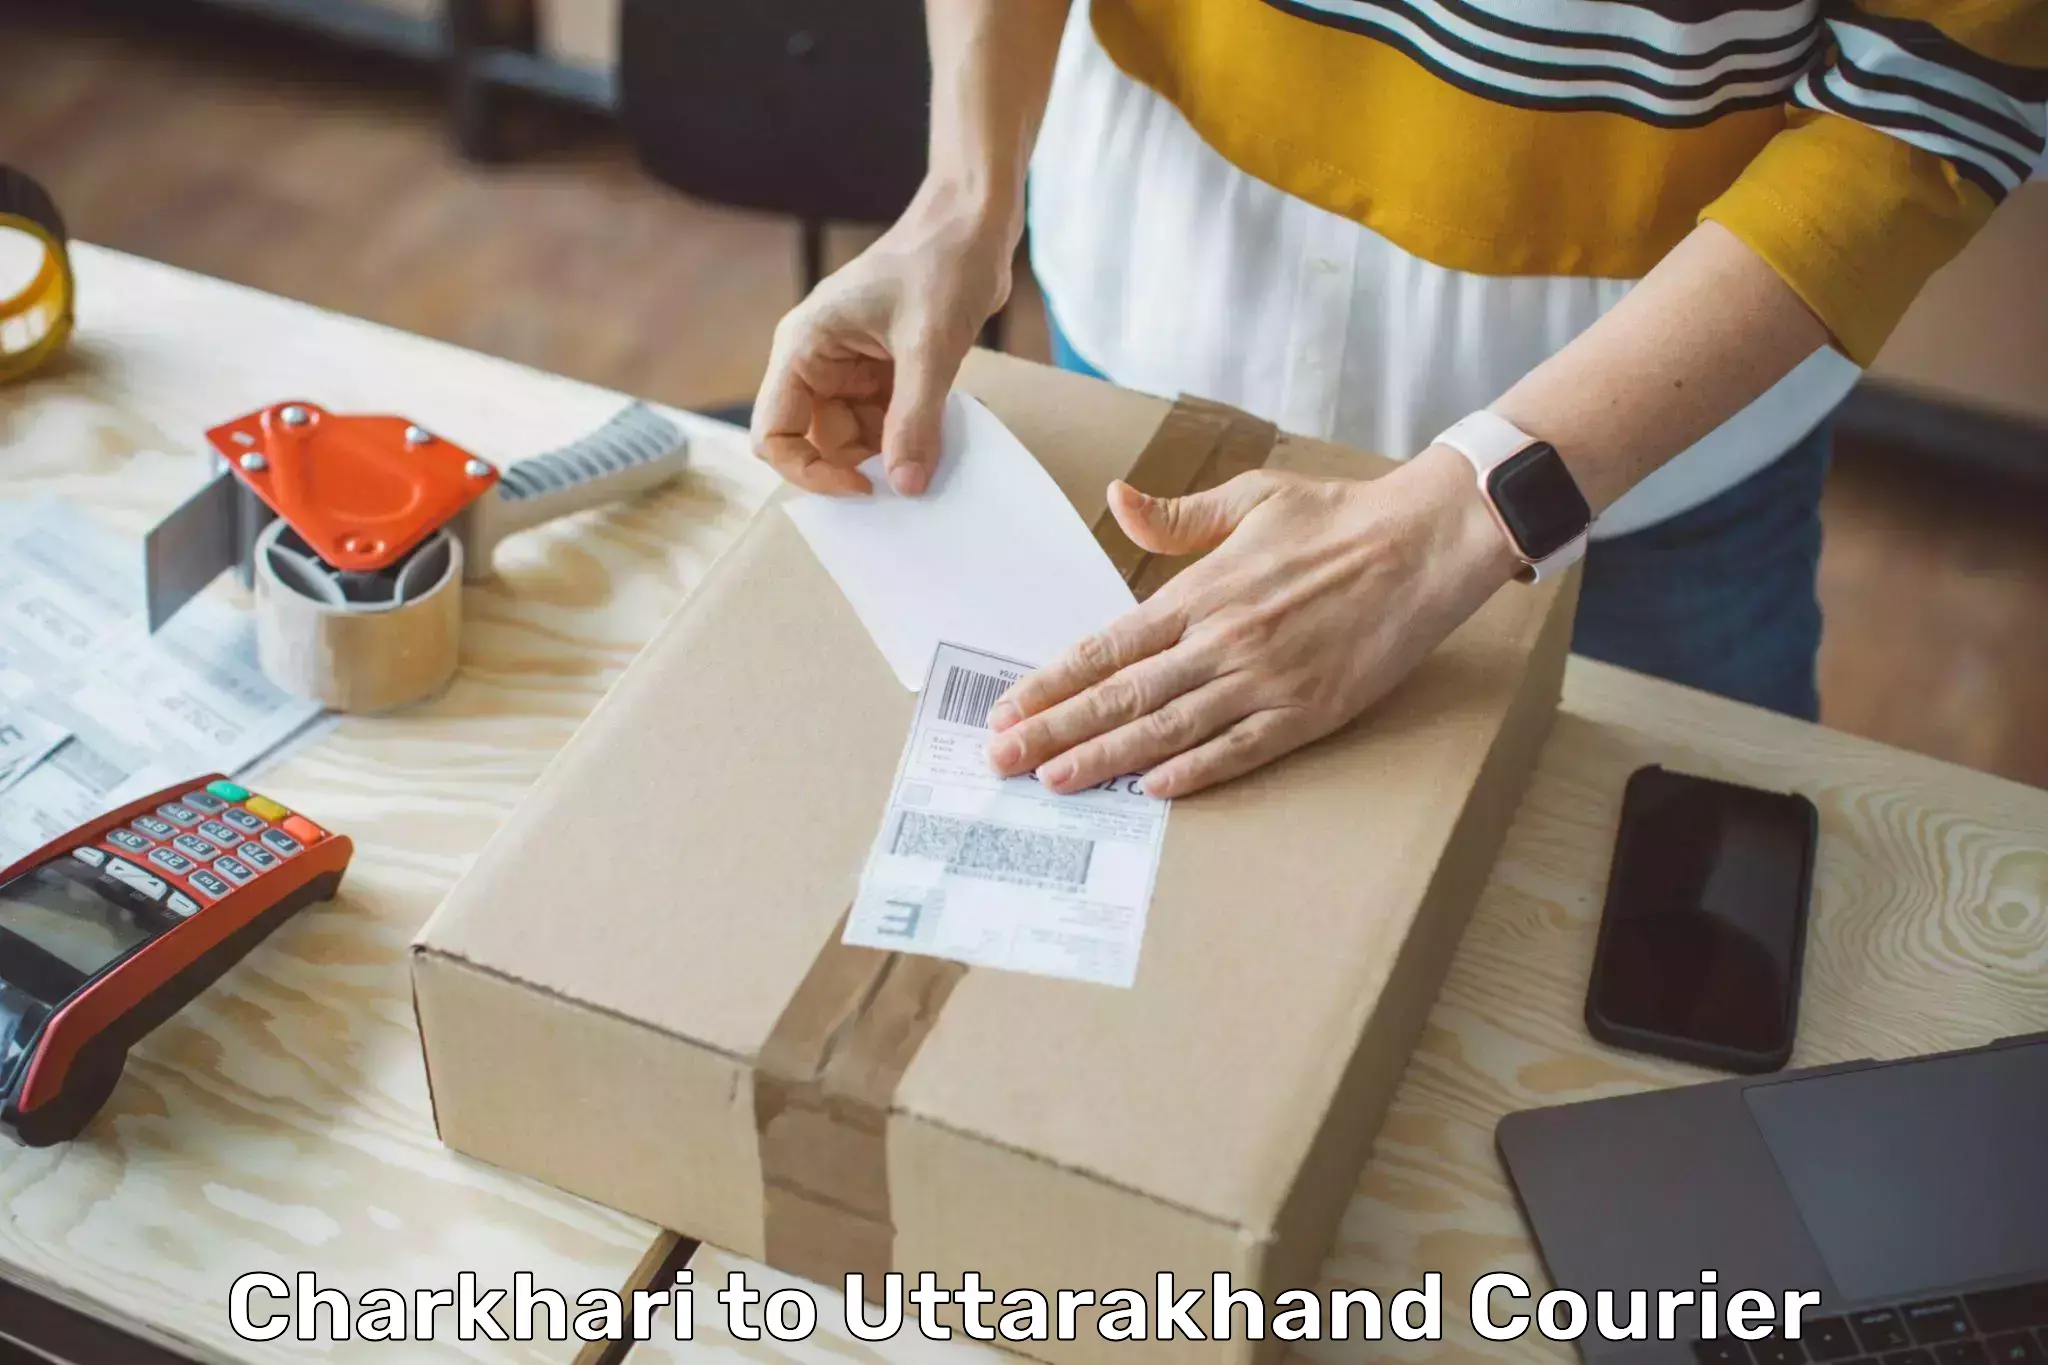 Global delivery options Charkhari to Rudraprayag